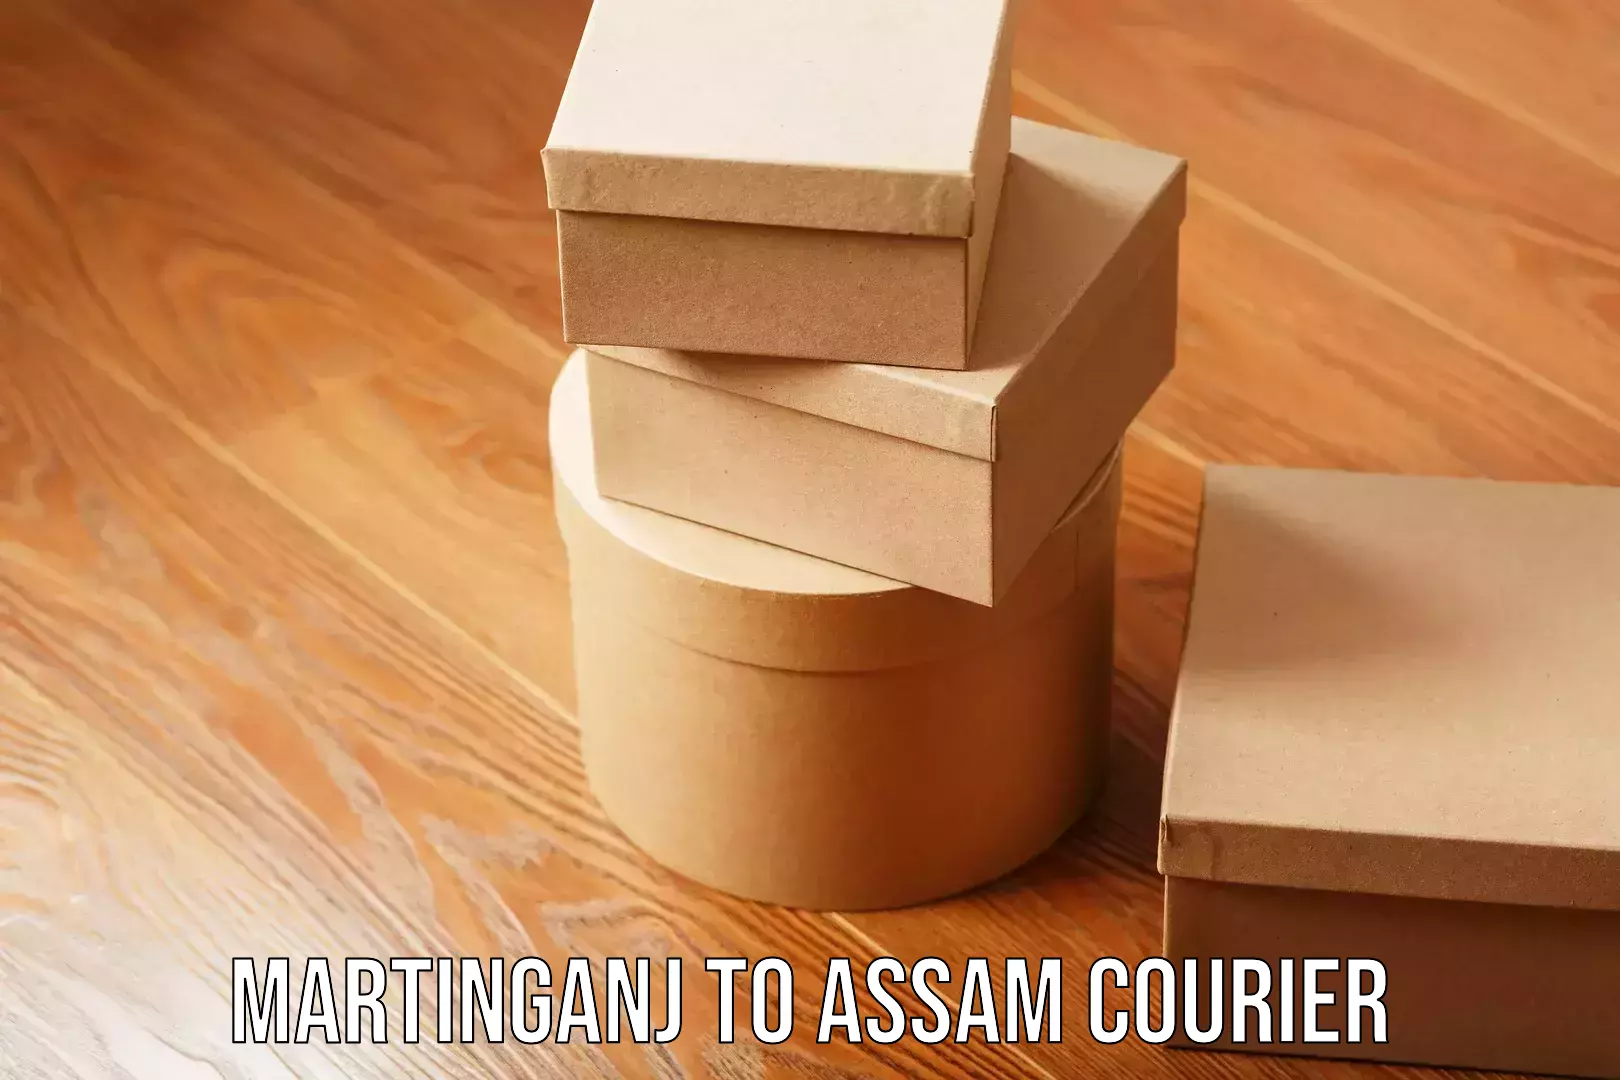 Premium moving services Martinganj to Assam